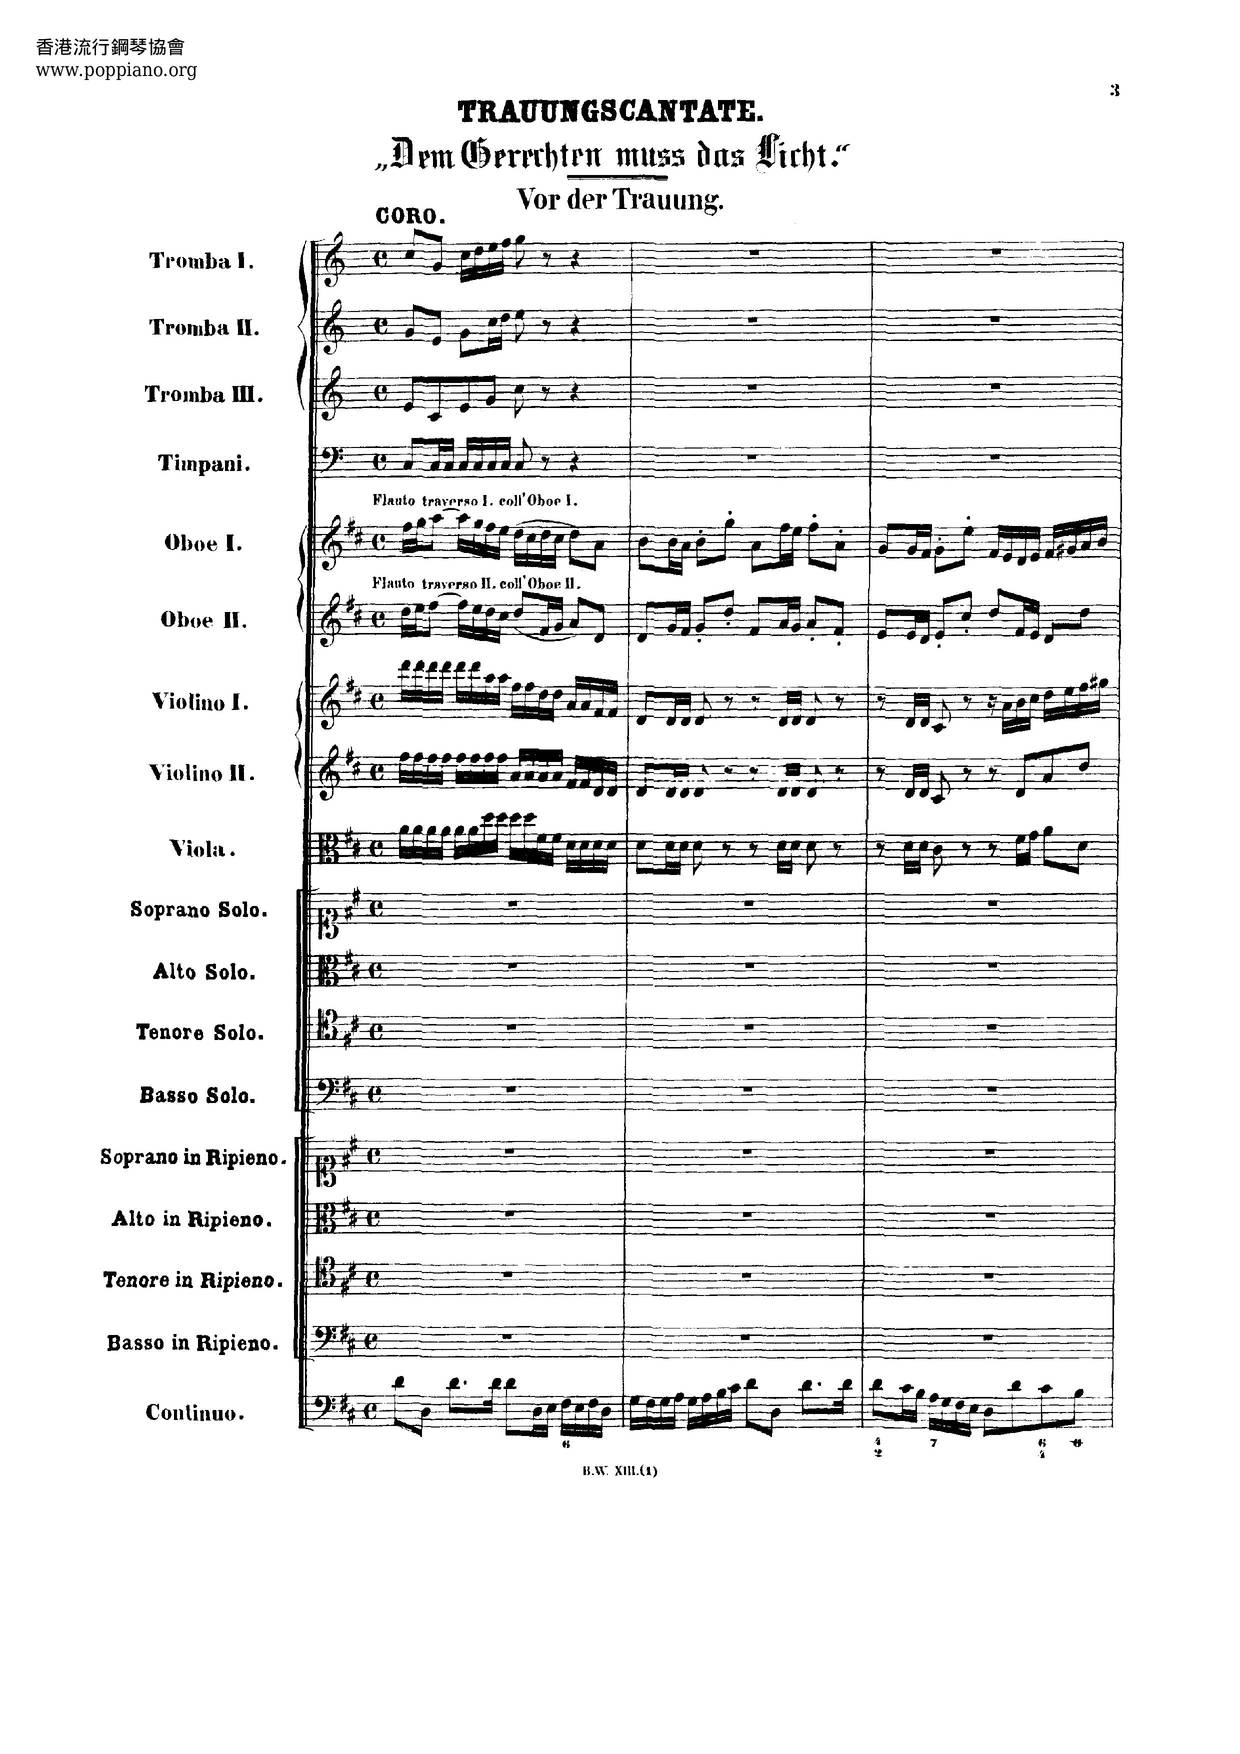 Dem Gerechten Muss Das Licht, BWV 195 Score